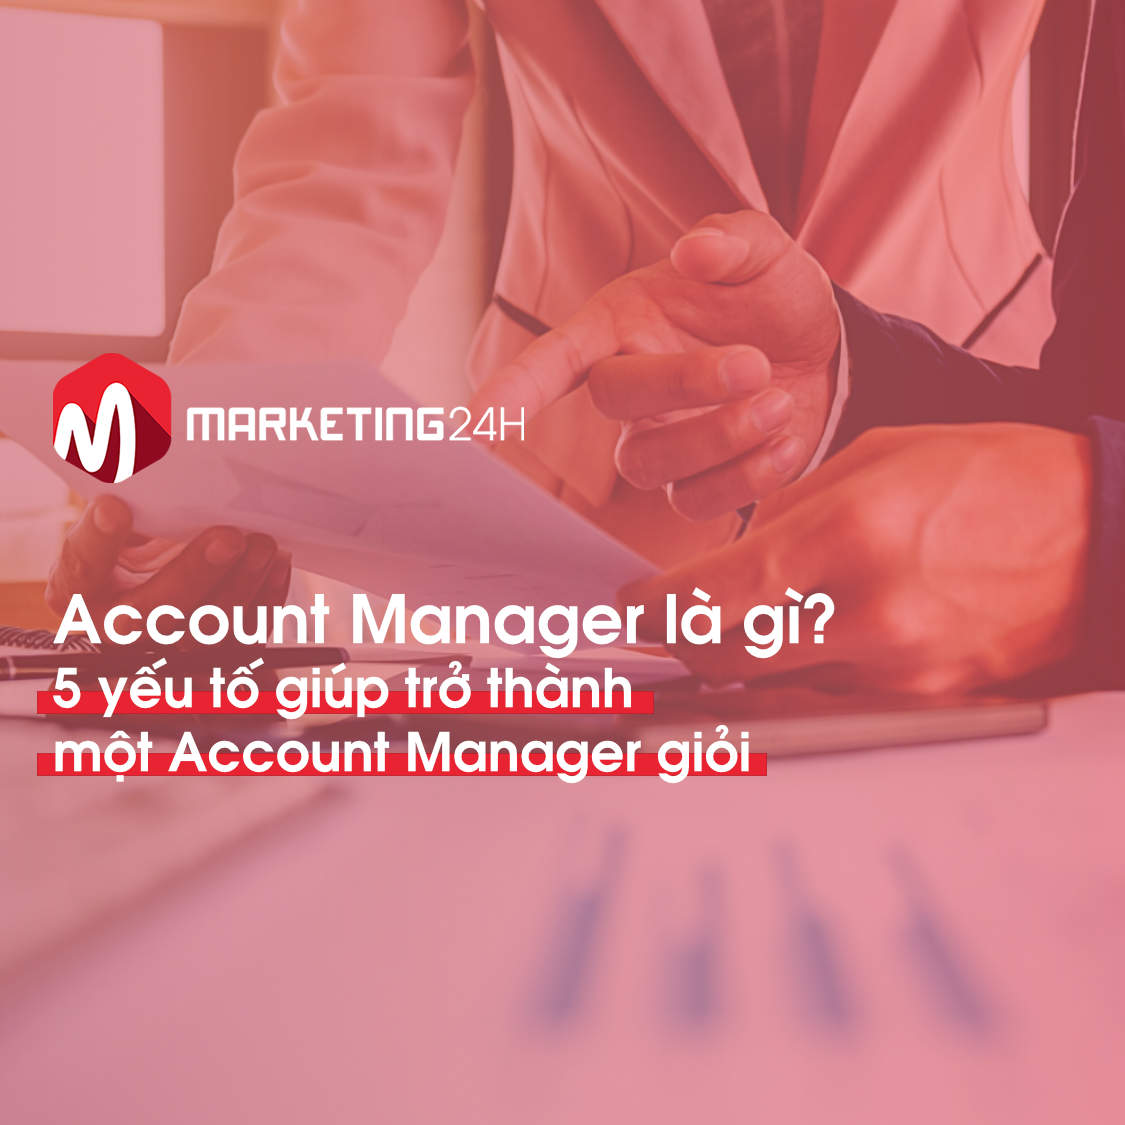 Account Manager là gì? 5 yếu tố giúp trở thành một Account Manager giỏi